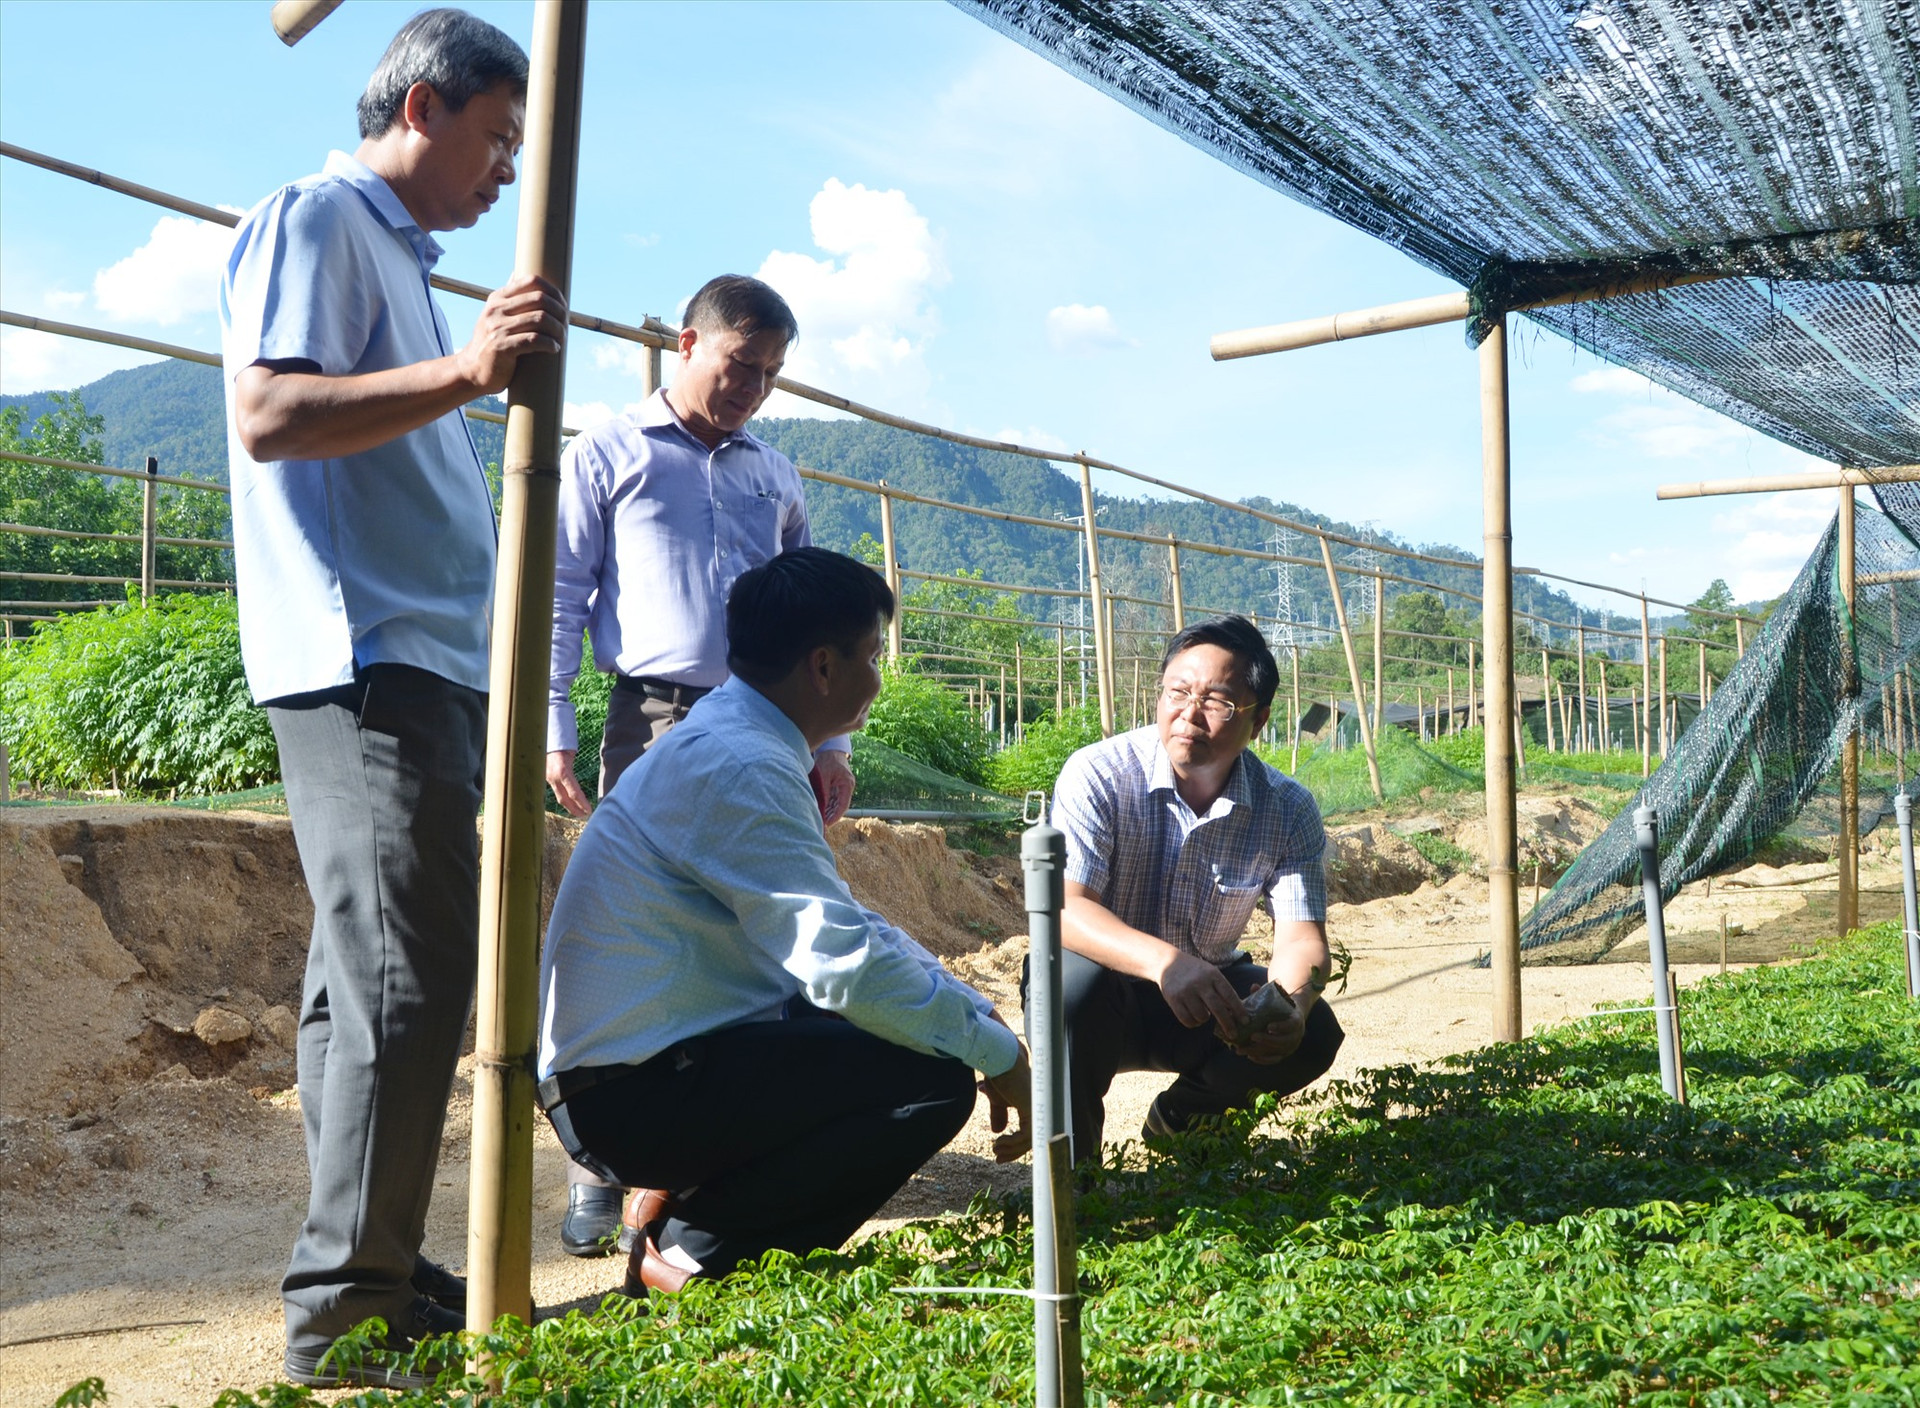 Chủ tịch UBND tỉnh Lê Trí Thanh và Phó Chủ tịch UBND tỉnh Hồ Quang Bửu kiểm tra vườn ươm cây giống tại Vườn quốc gia Sông Thanh.Ảnh: H.P